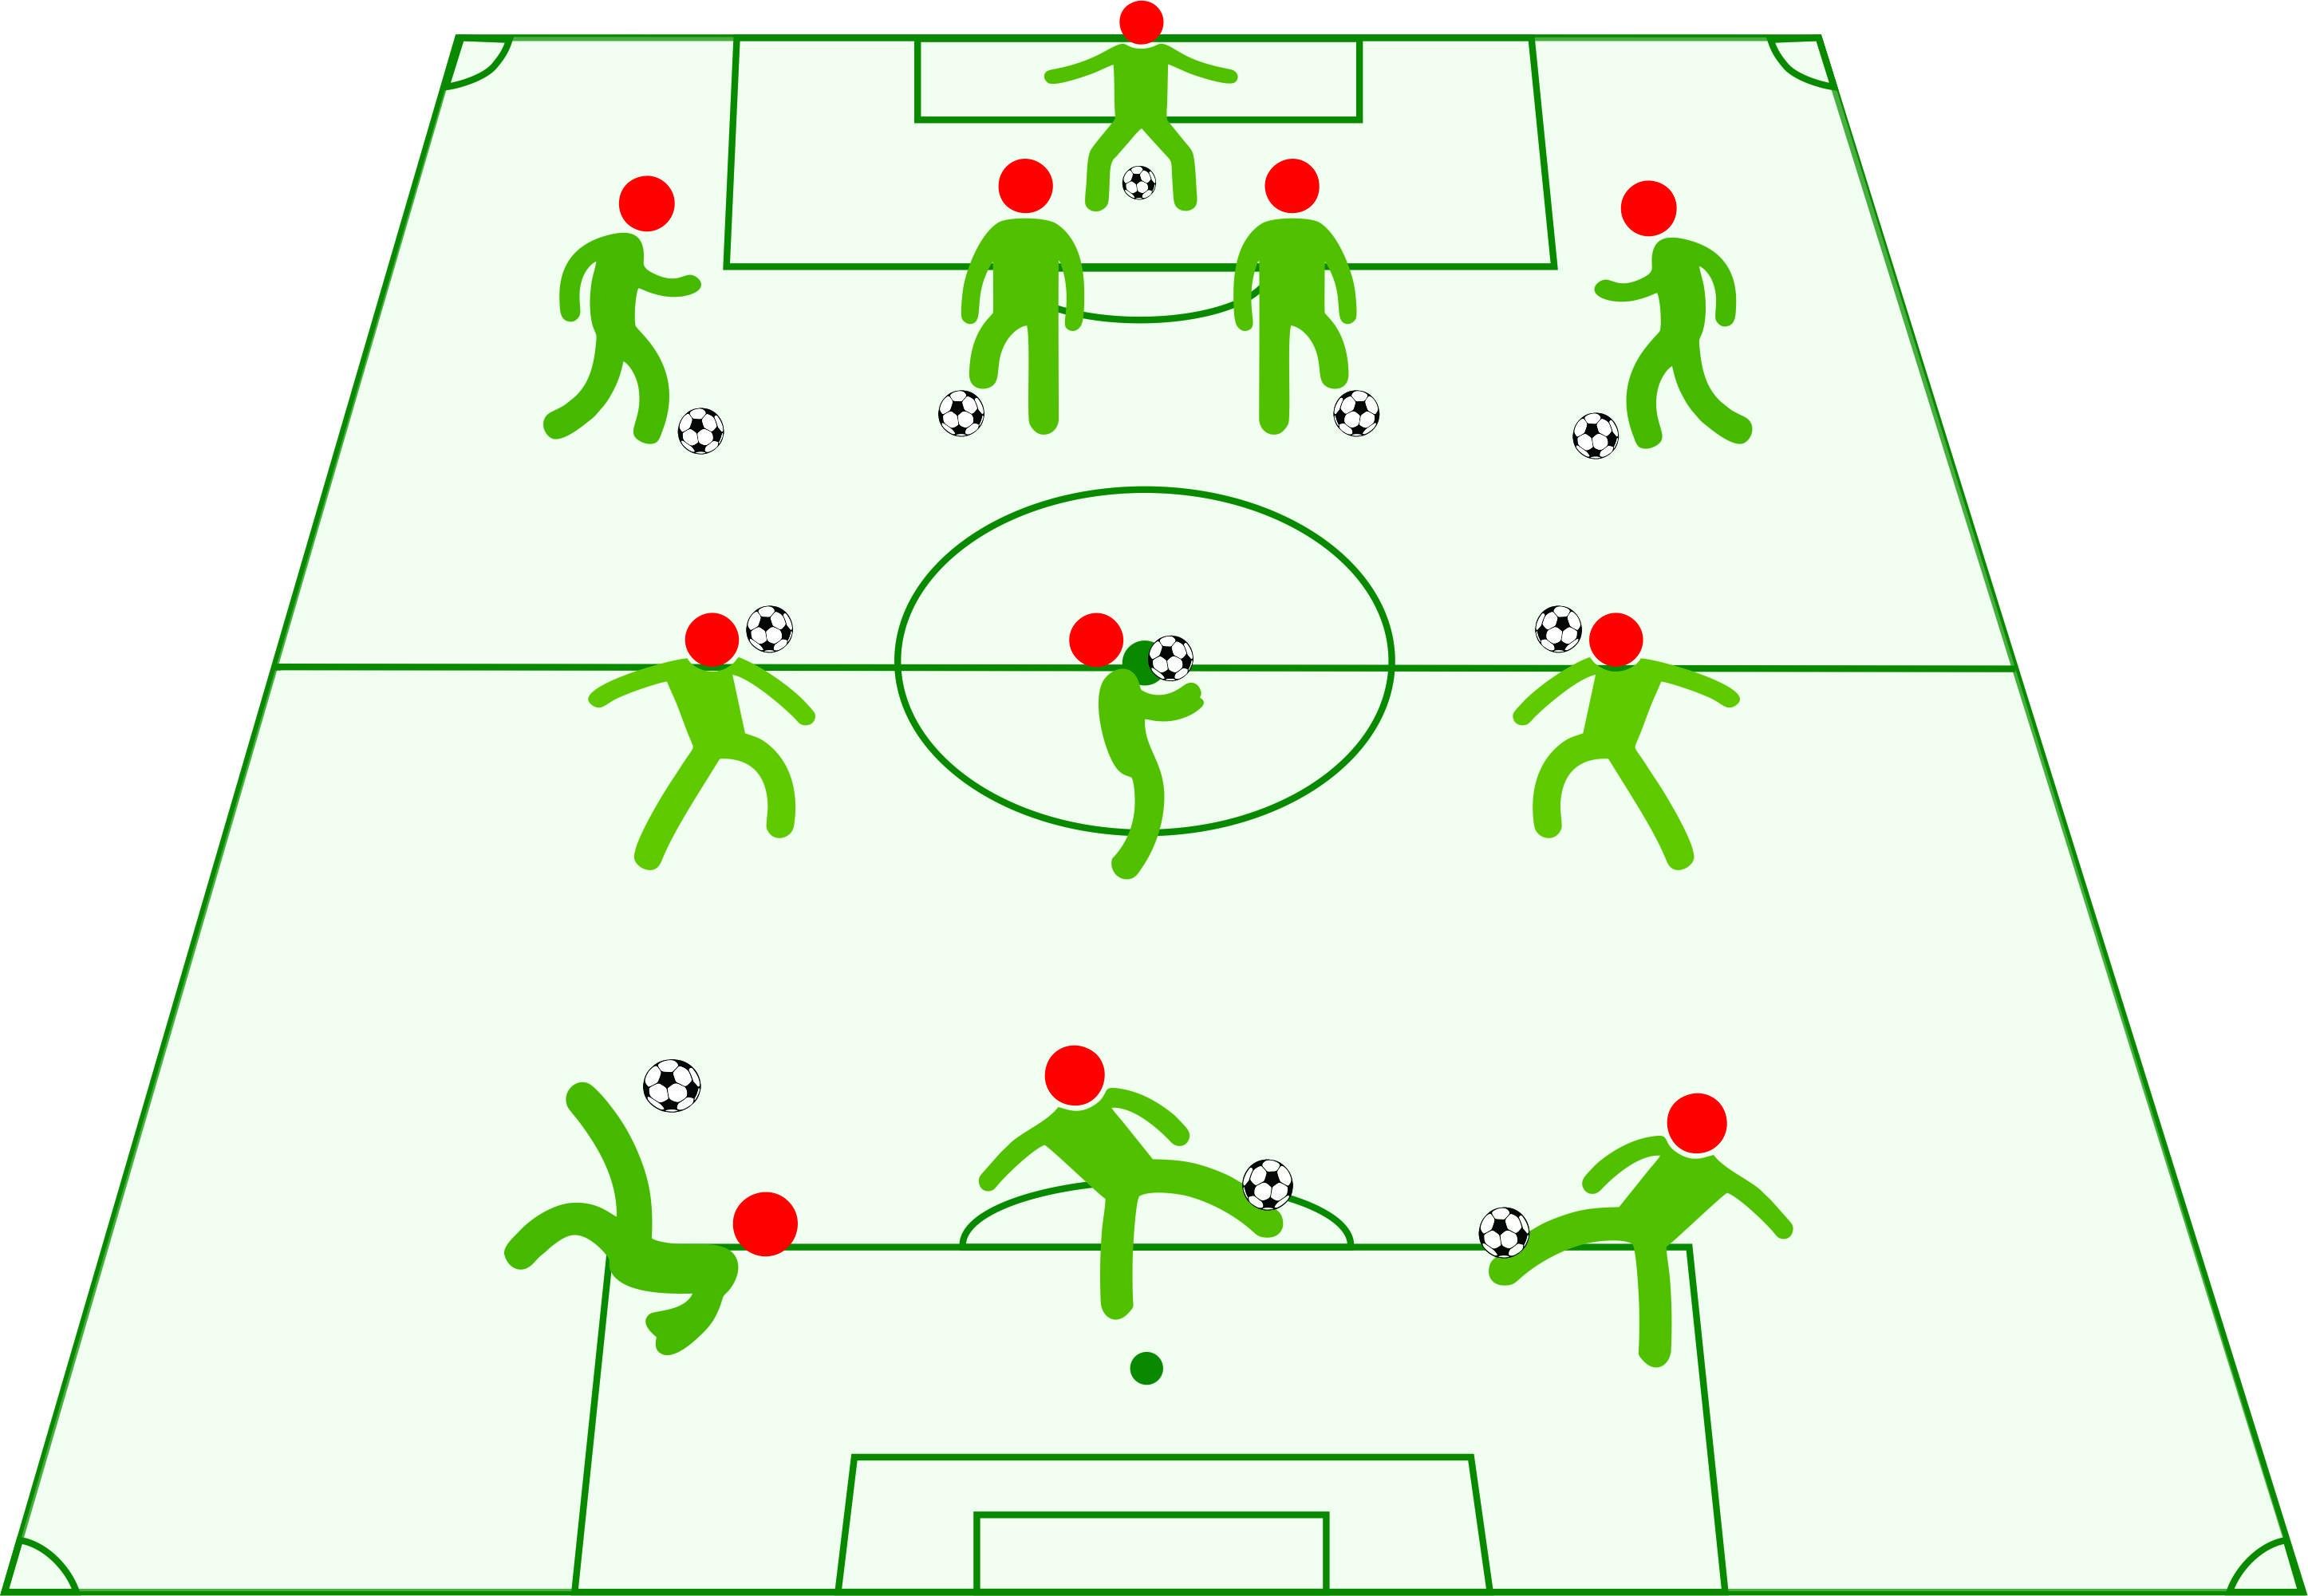 Dalam permainan bola voli, pemain yang khusus bertugas sebagai pemain bertahan dan menerima serangan dari lawan dinamakan